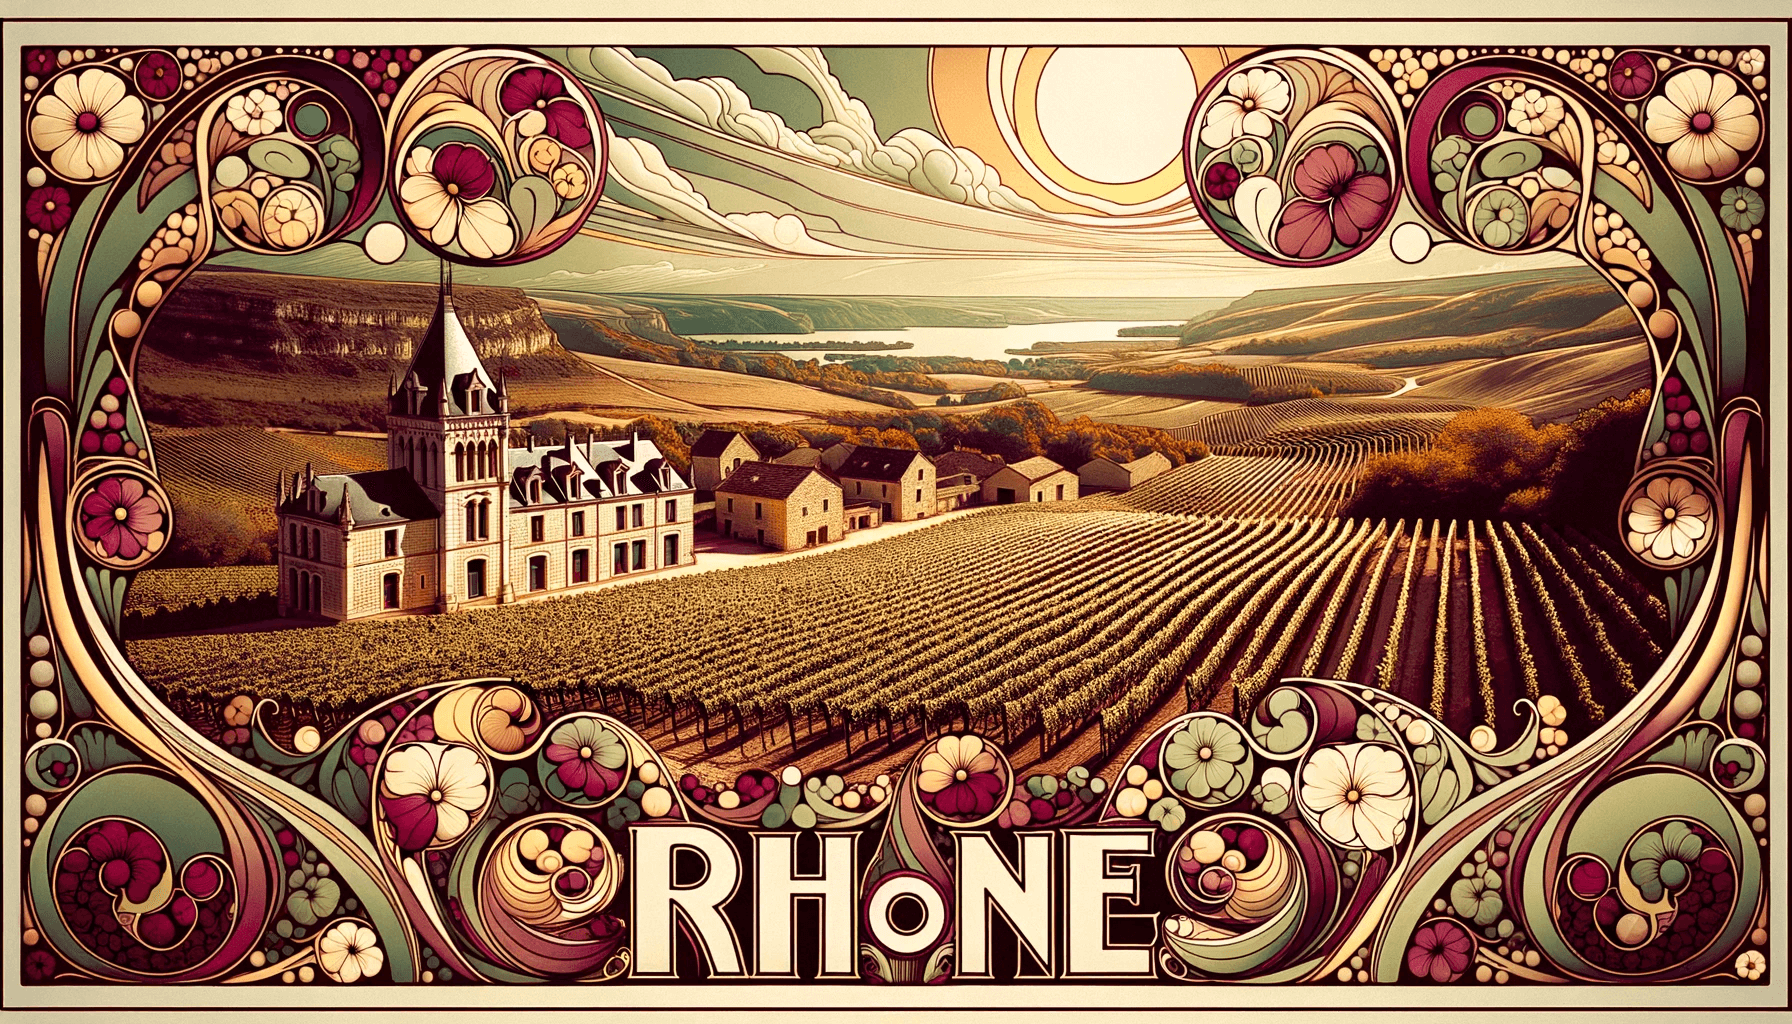 vins-valle-du-rhone-autour-d-un-verre-illustration-art-nouveau